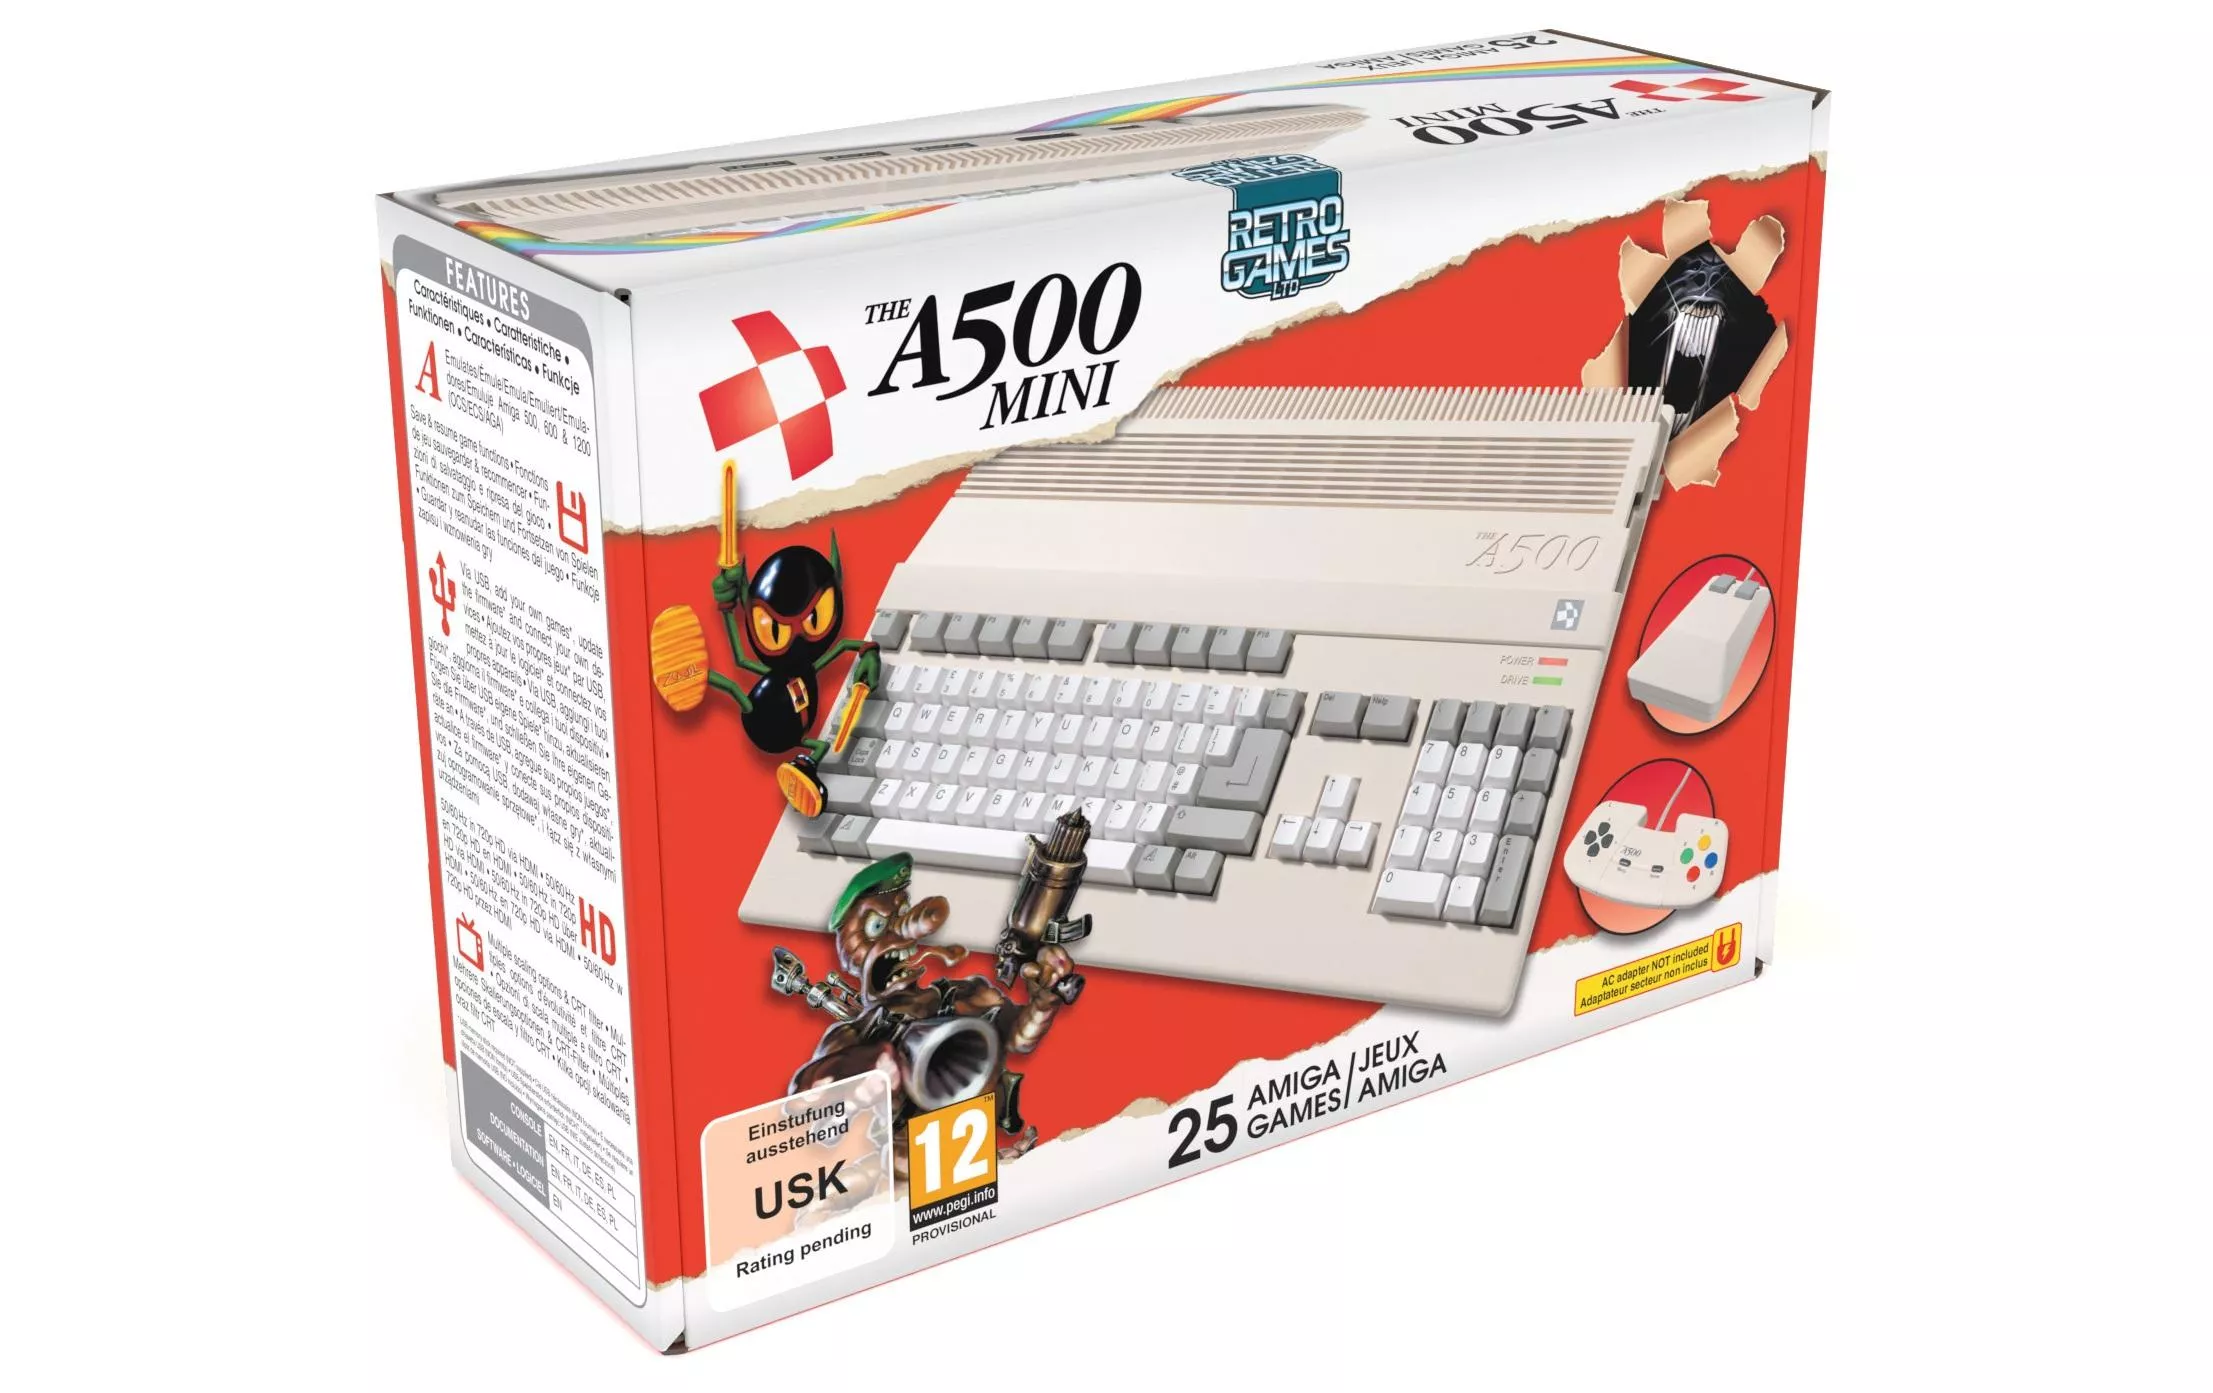 Console de jeu The A500 Mini